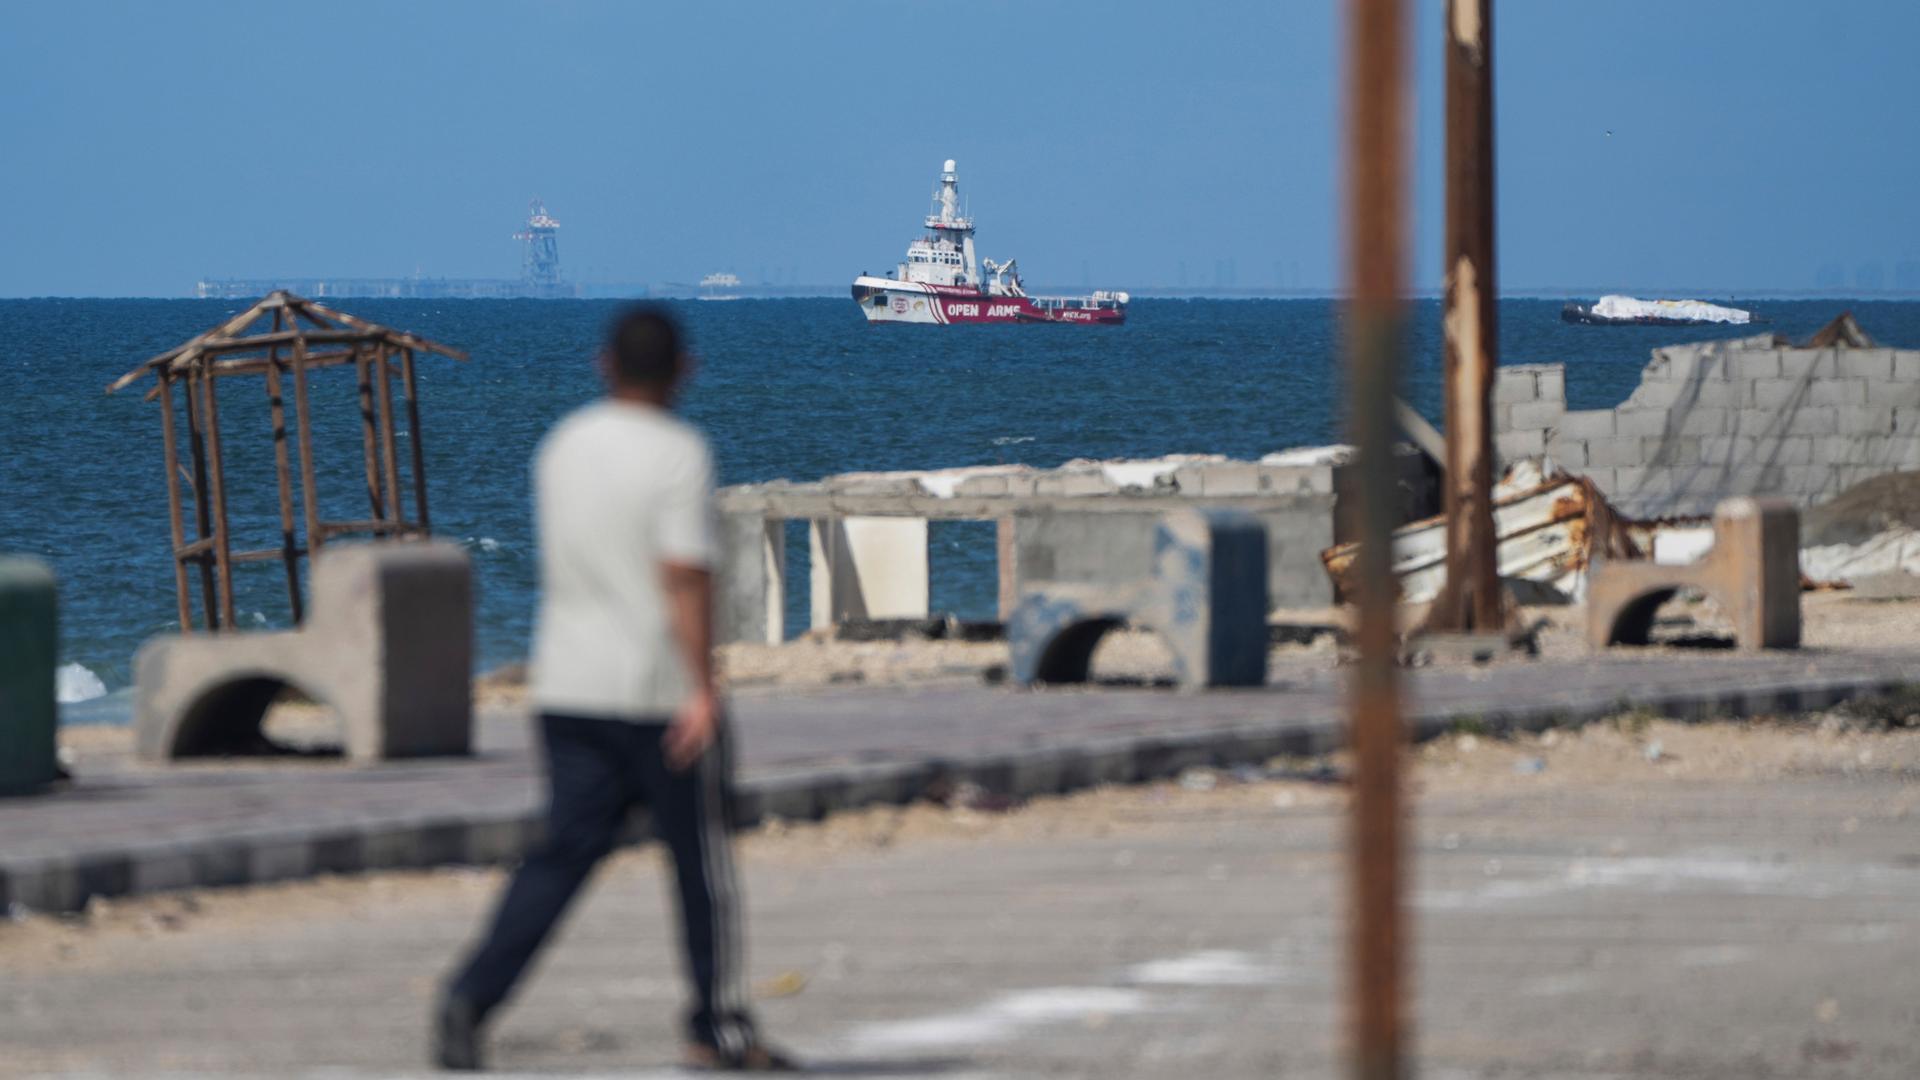 Das Schiff der Hilfsorganisation "Open Arms" nähert sich der Küste des Gazastreifens. Das Foto wurde von Land aus aufgenommen. Im Vordergund ist unscharf ein Mensch abgebildet.